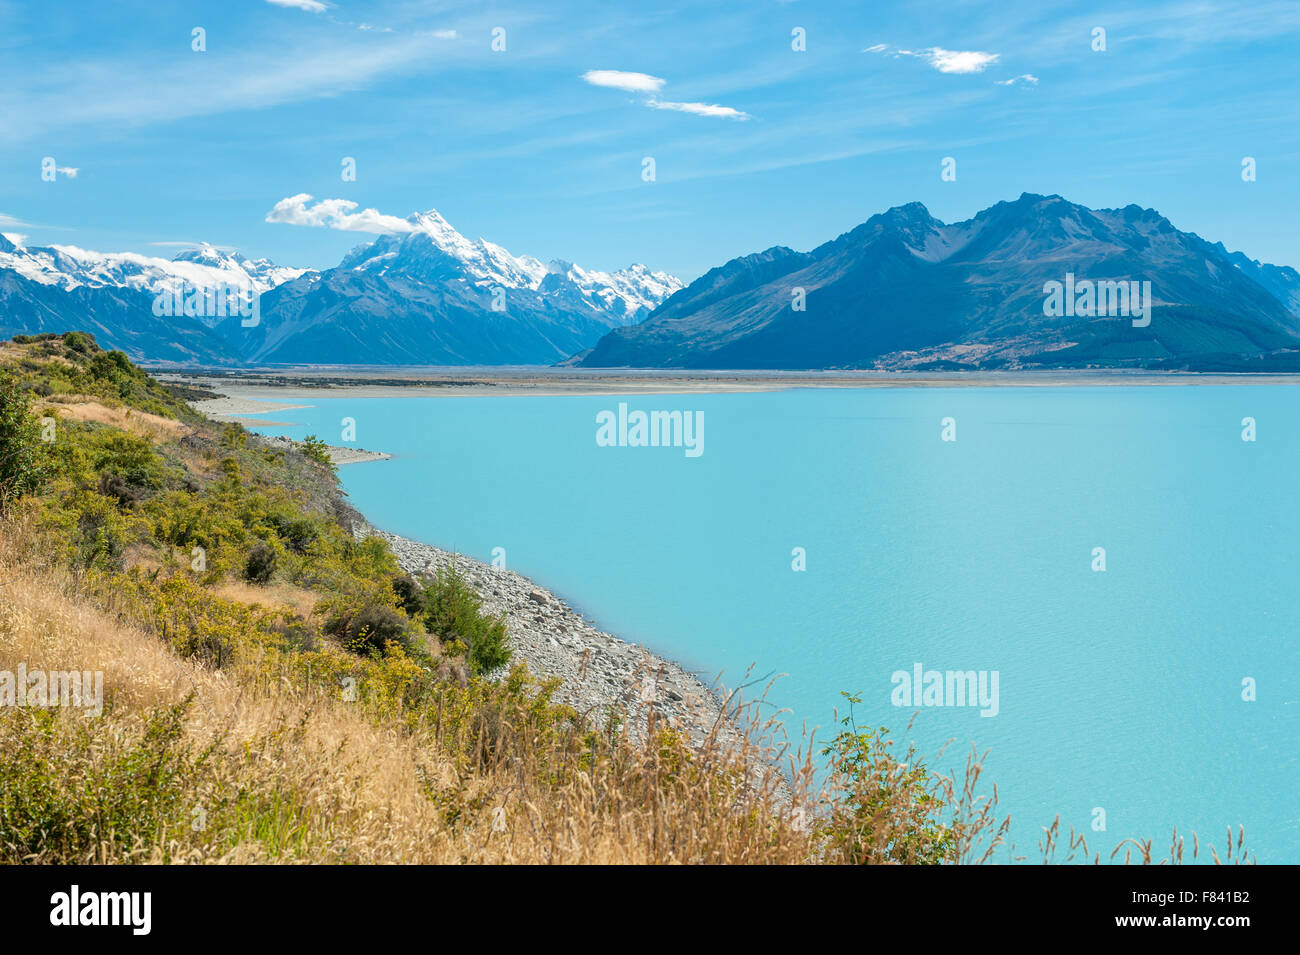 Le lac Pukaki et le Mont Cook, île du Sud, Nouvelle-Zélande Banque D'Images